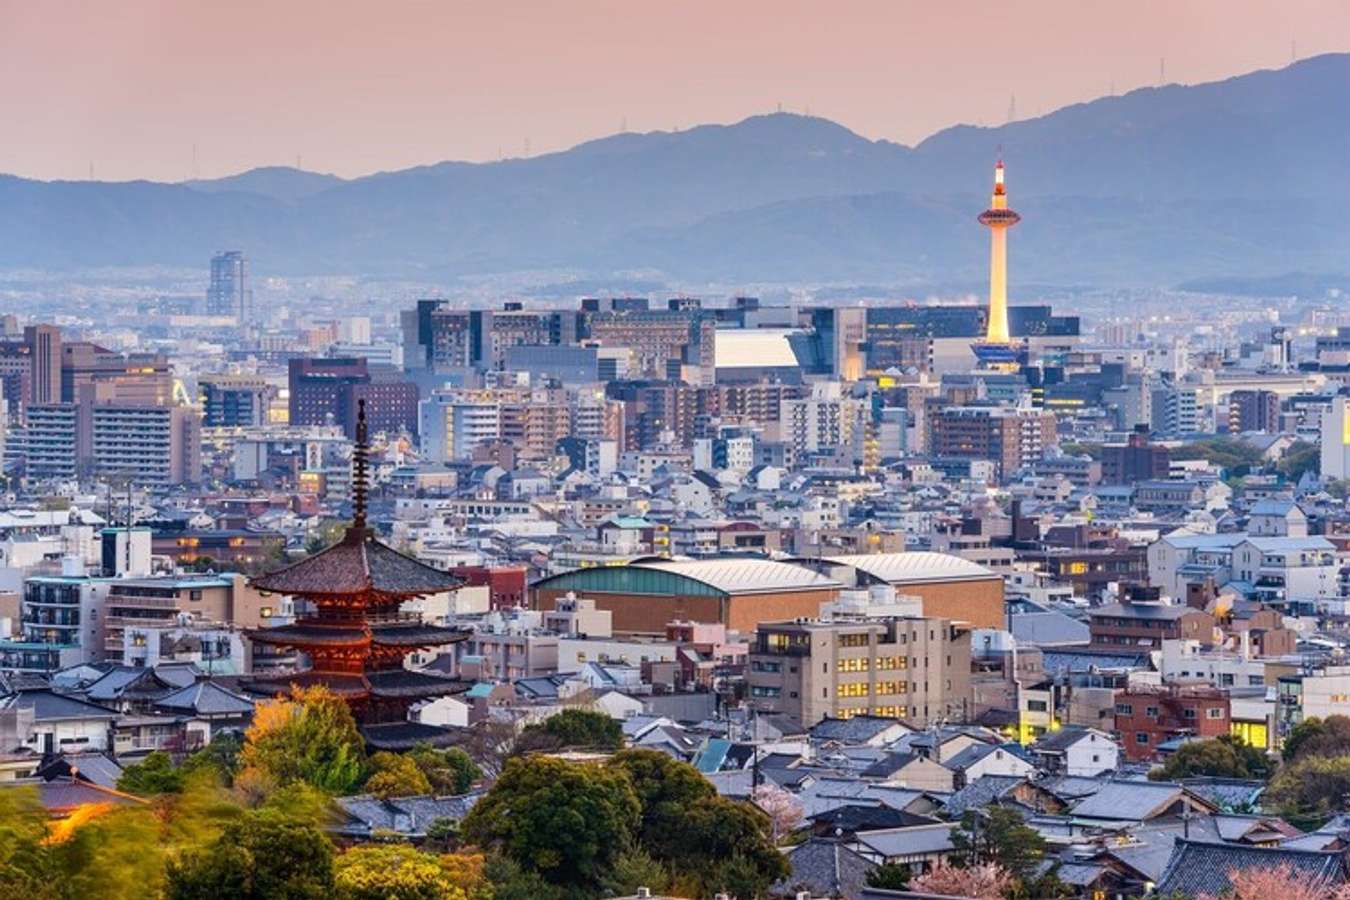 Kinh nghiệm du‌ ‌lịch‌ ‌Kyoto:‌ ‌ăn‌ ‌uống,‌ ‌nghỉ‌ ‌ngơi,‌ ‌vui‌ ‌chơi‌  ‌từ‌ ‌A‌ ‌đến‌ ‌Z‌